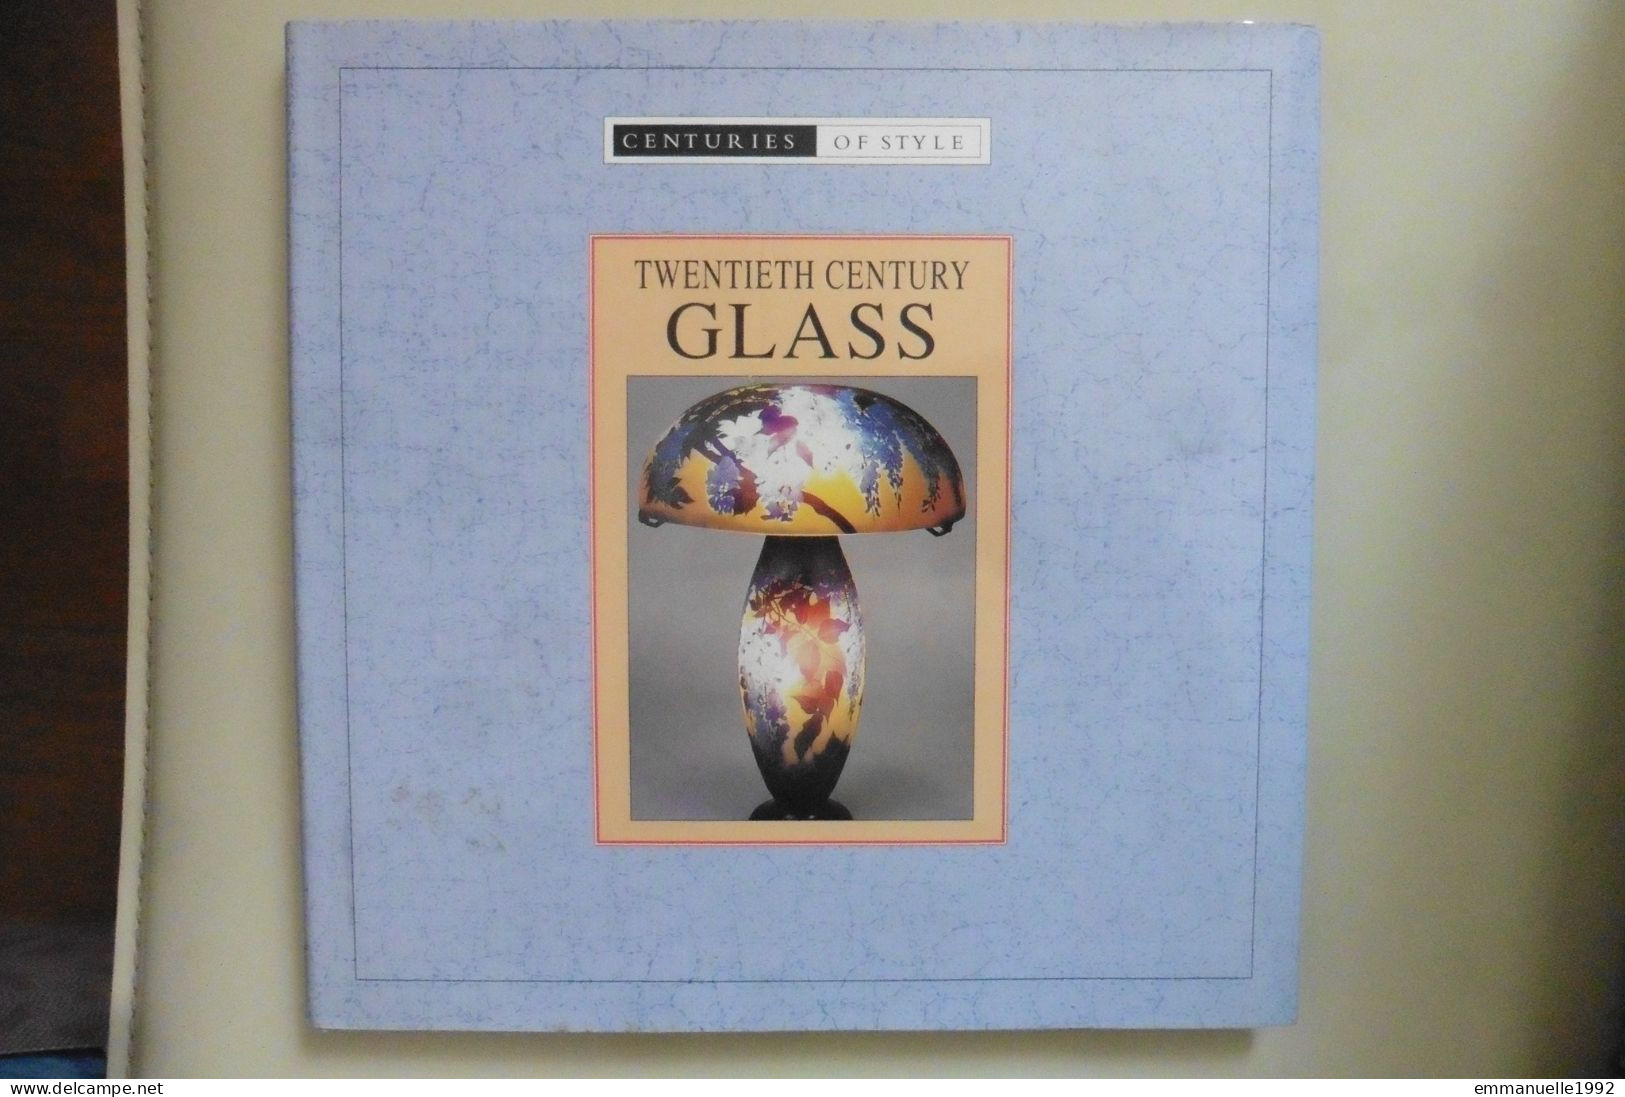 Livre Twentieth Century Glass - Le Verre Au 20e Siècle Art Deco Lalique Baccarat Tiffany Etc - English Text - Belle-Arti